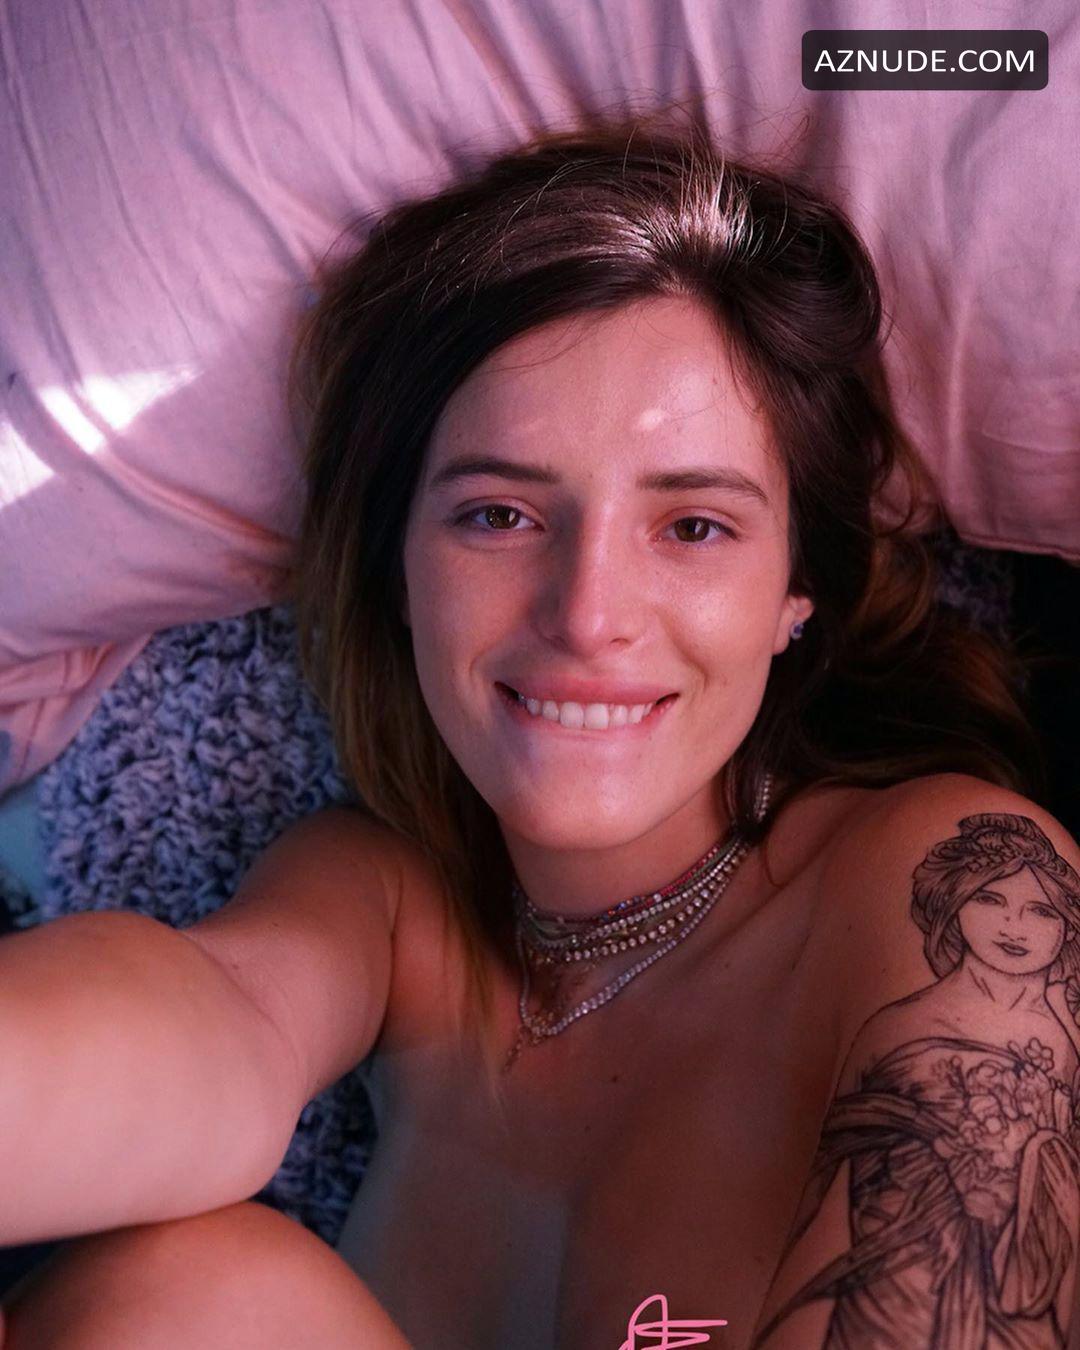 Bella thorne nude selfie